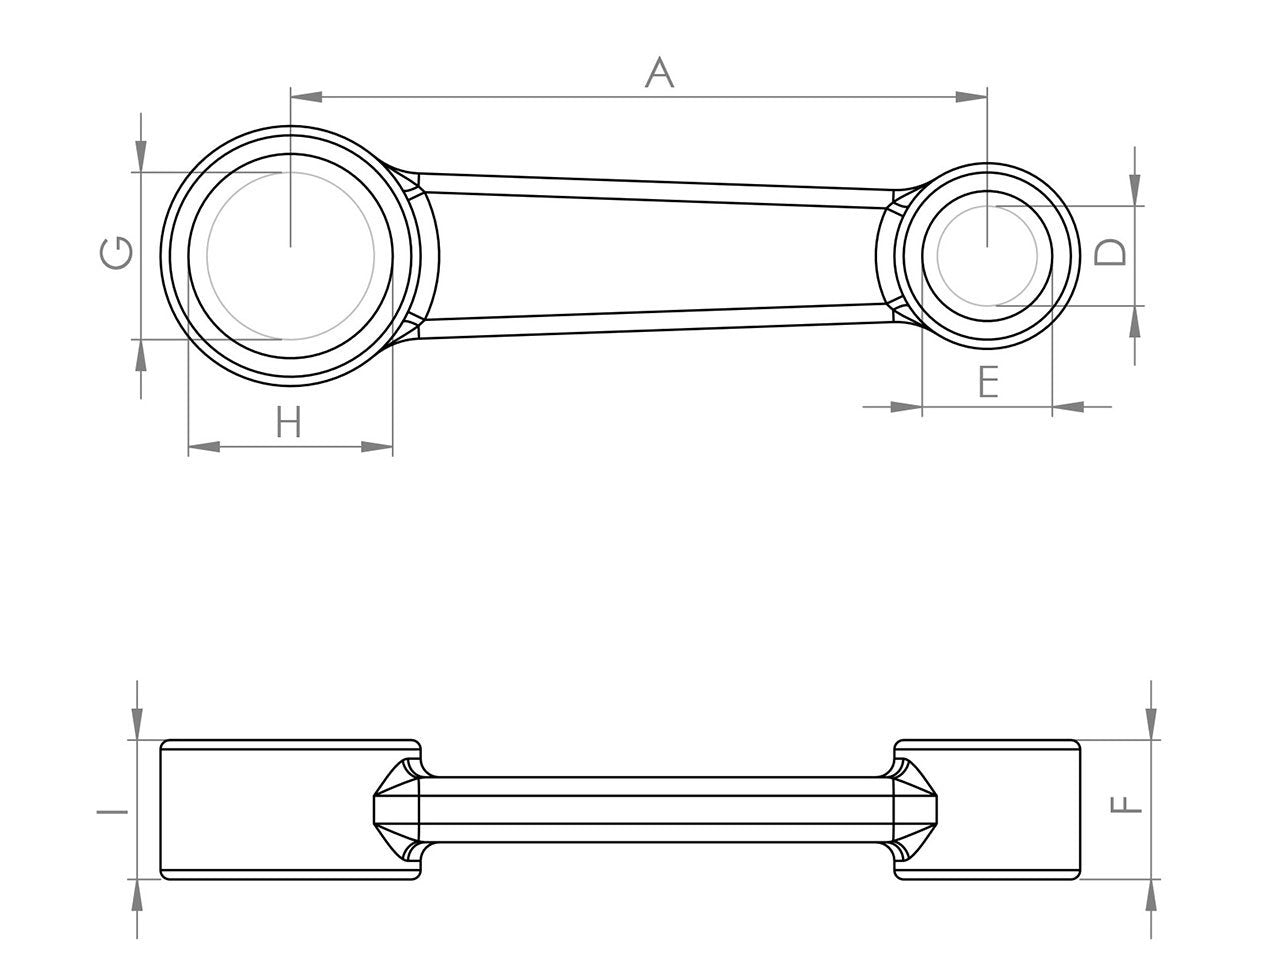 Zeichnung Barikit Pleuel für einen Husqvarna TC 50 Motor mit Bemaßung.